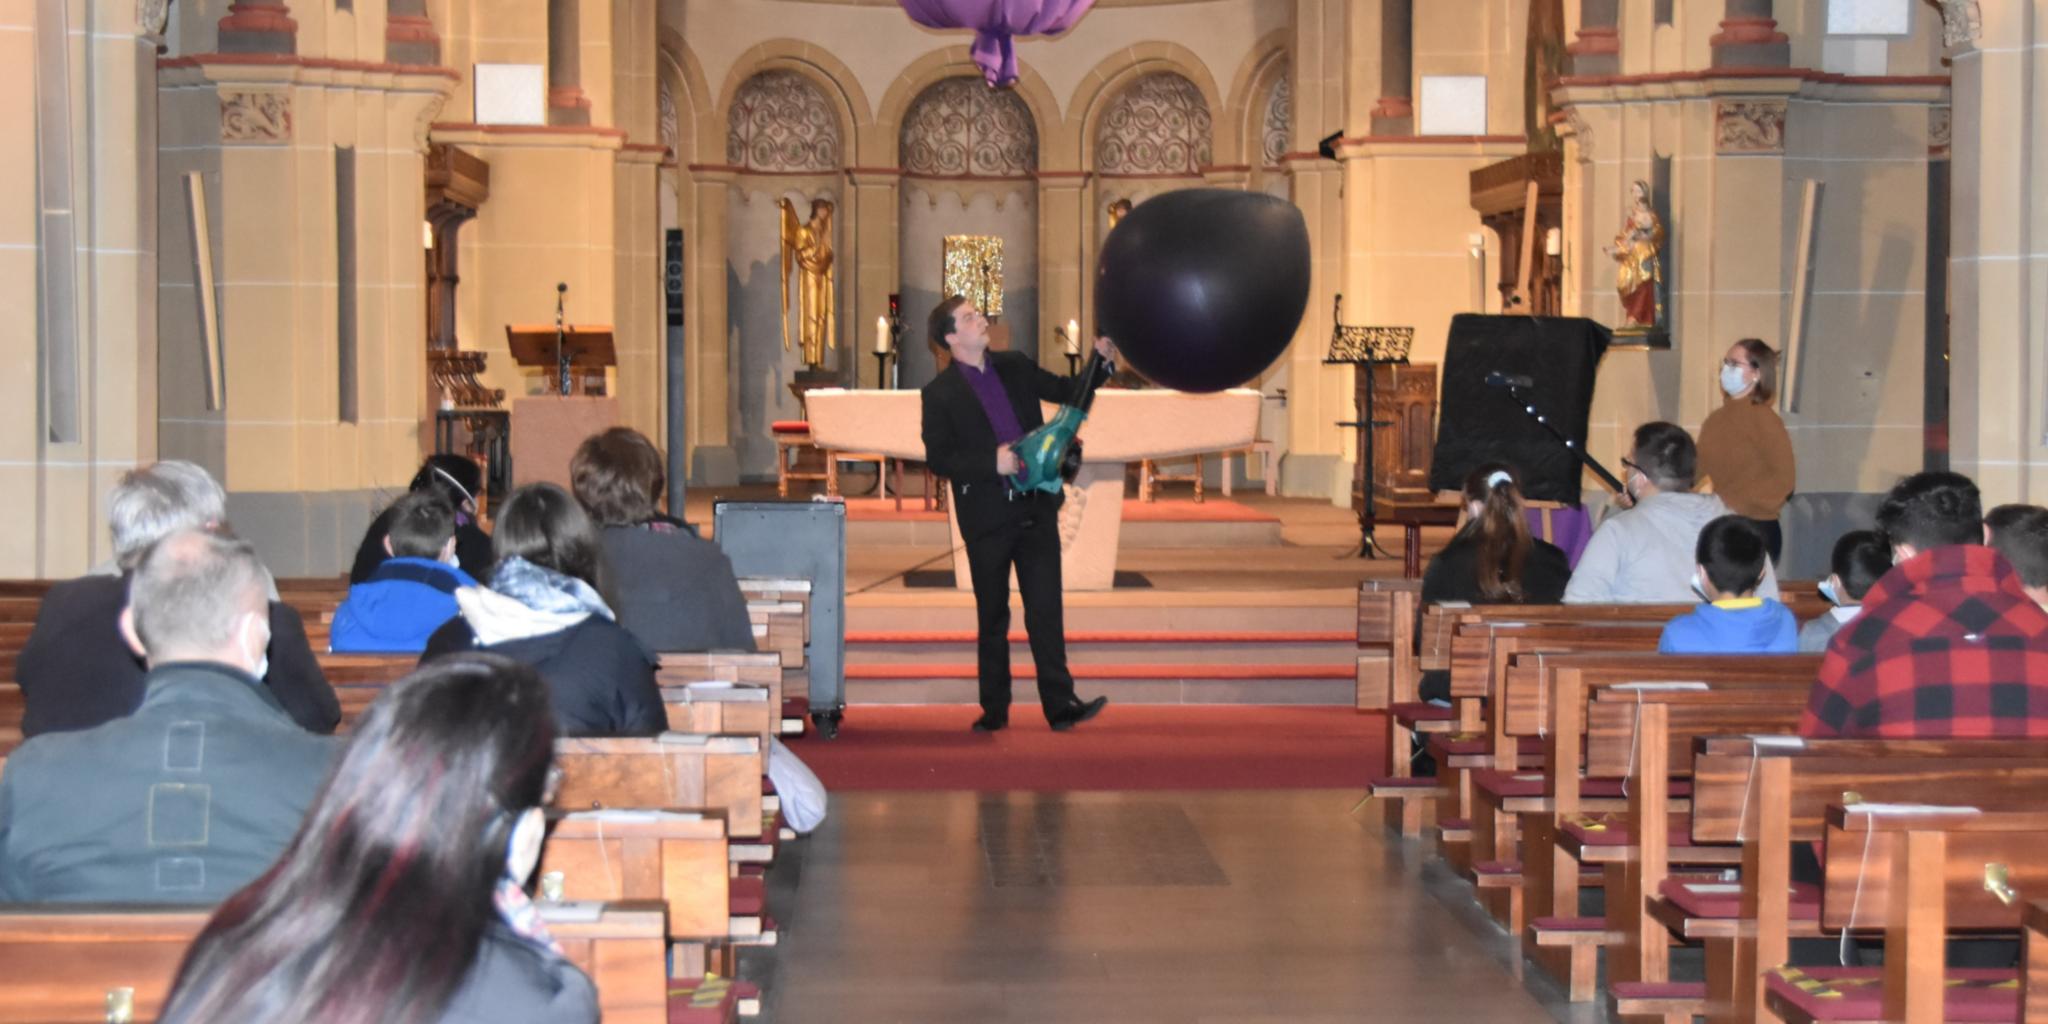 Mit einer Art Laubbläser pustet Maxim Maurice (Philipp Daub) den Ballon im Altarraum auf. Foto: uk